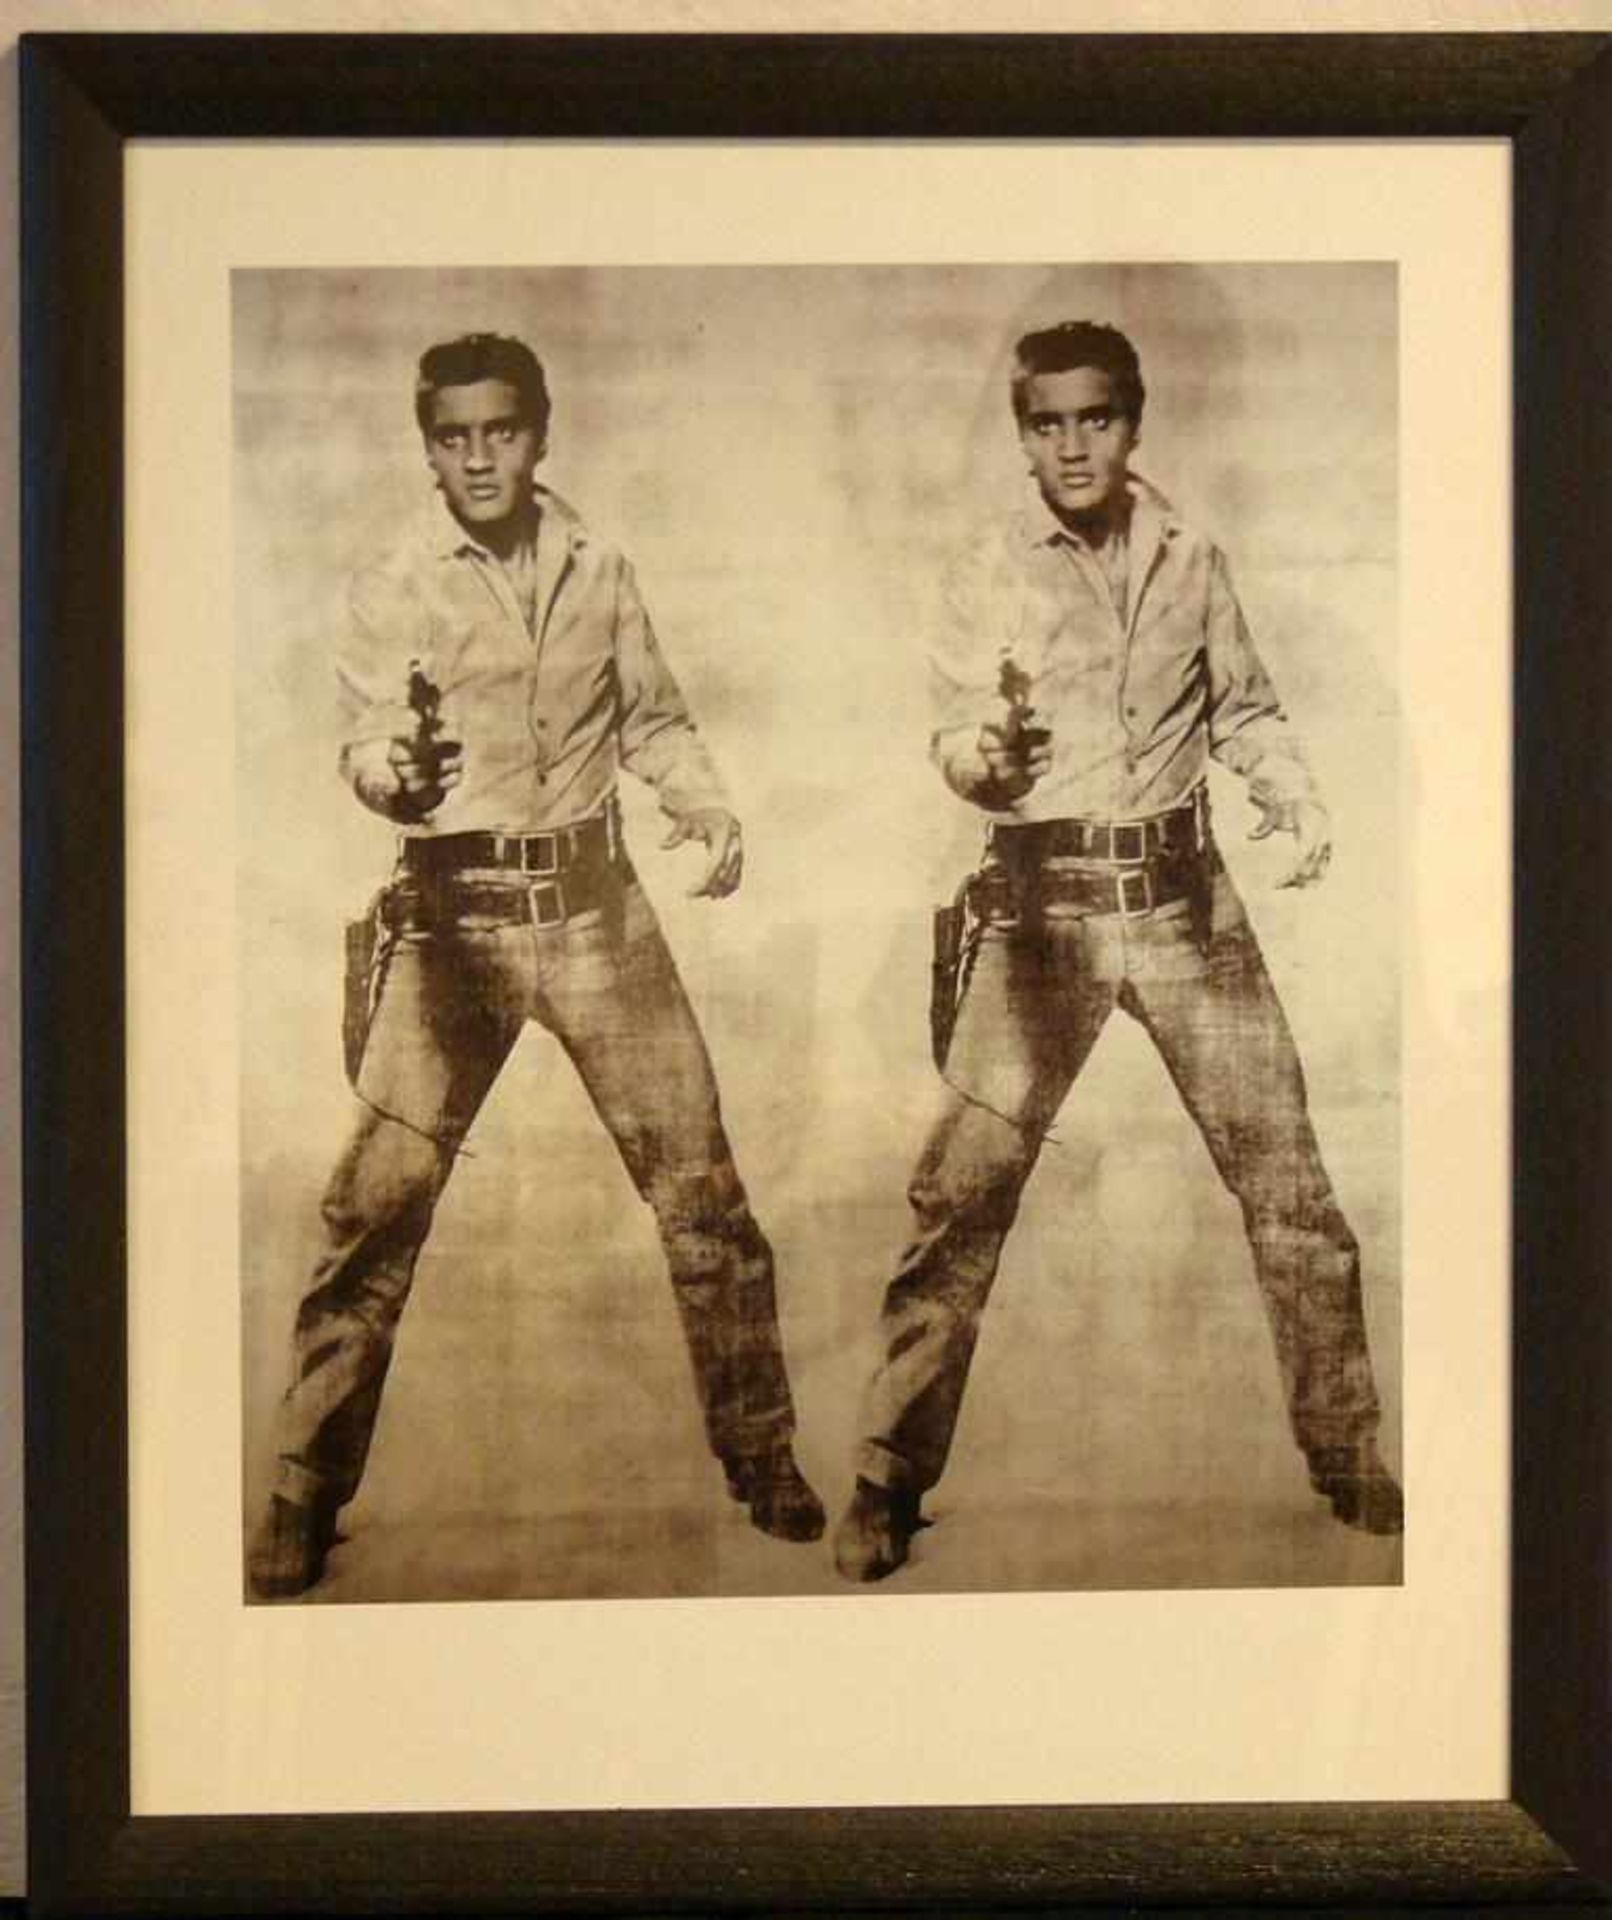 ANDY WARHOL (1928-1987), "Double Elvis", Farboffsetlithographie nach einer Arbeit von 1963,